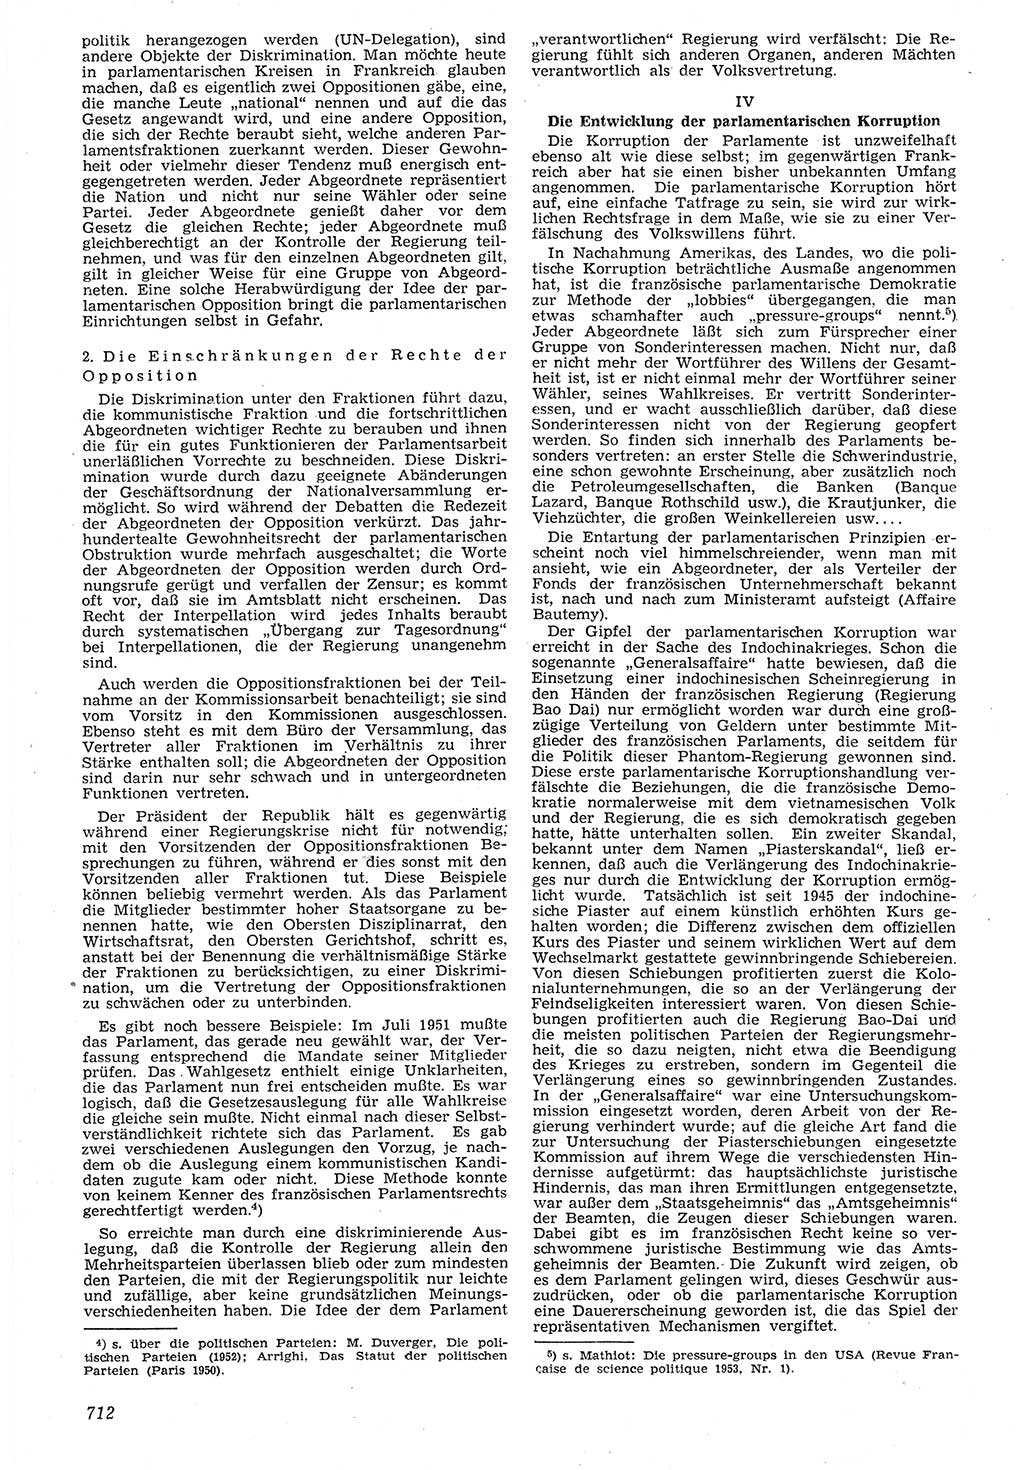 Neue Justiz (NJ), Zeitschrift für Recht und Rechtswissenschaft [Deutsche Demokratische Republik (DDR)], 7. Jahrgang 1953, Seite 712 (NJ DDR 1953, S. 712)